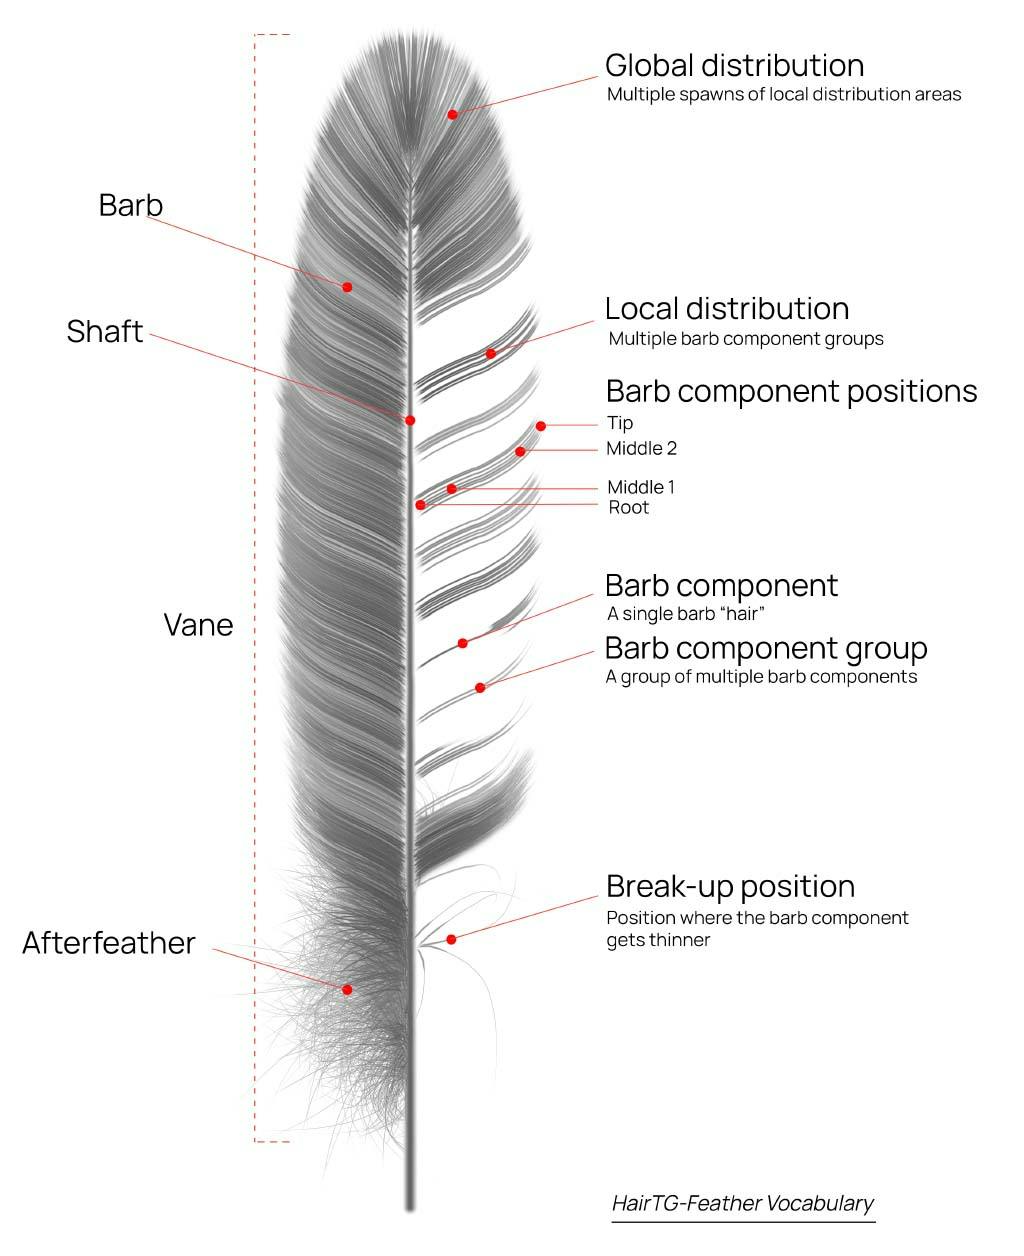 HairTG-Feather Vocabulary